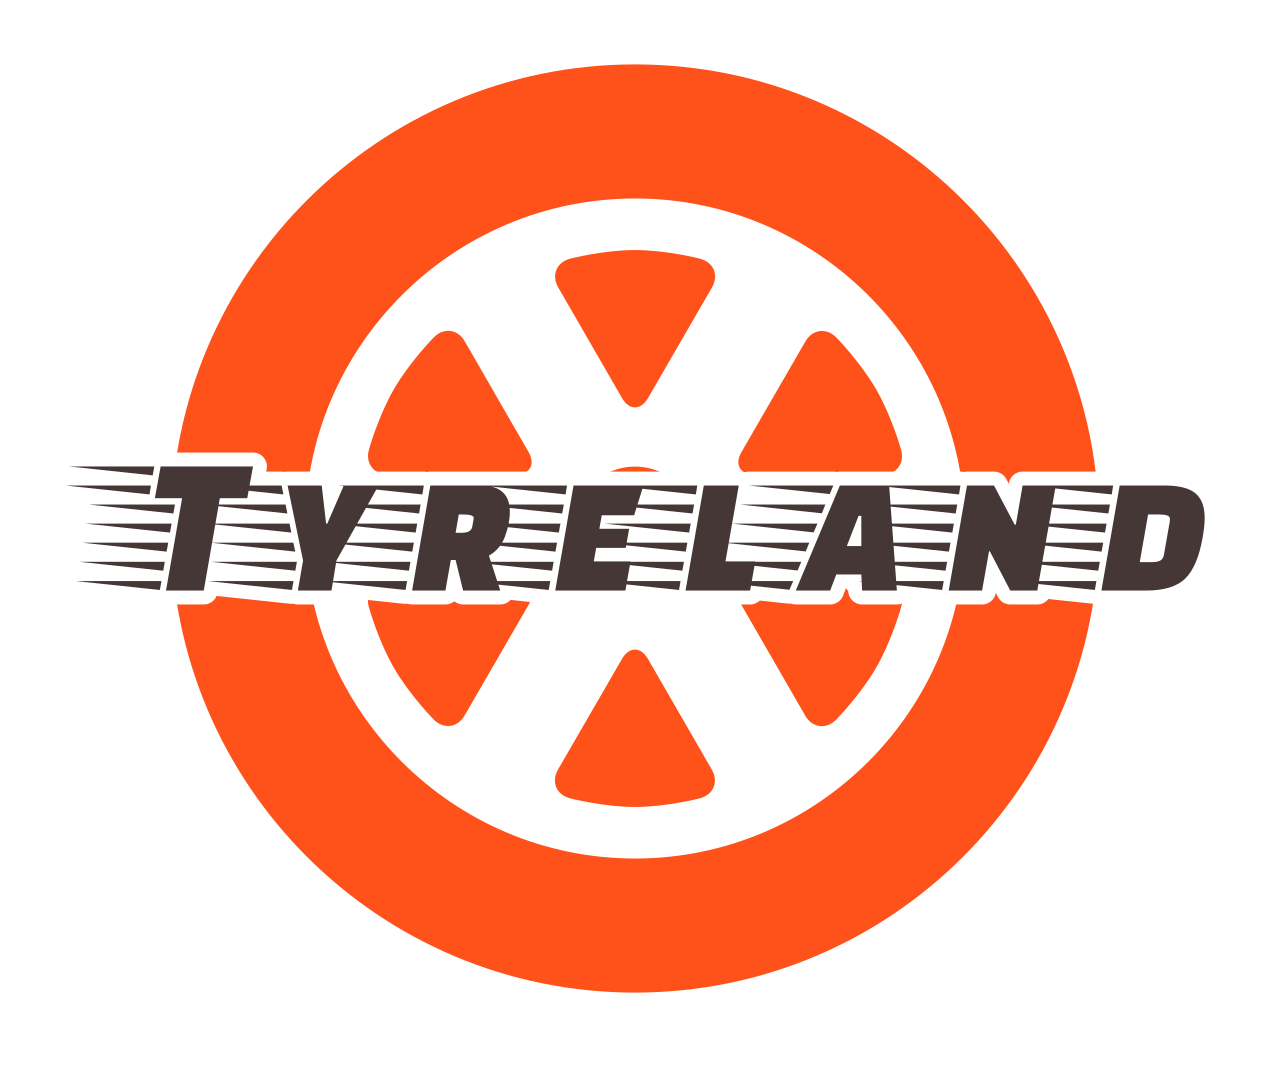 تایرلند - Tyreland